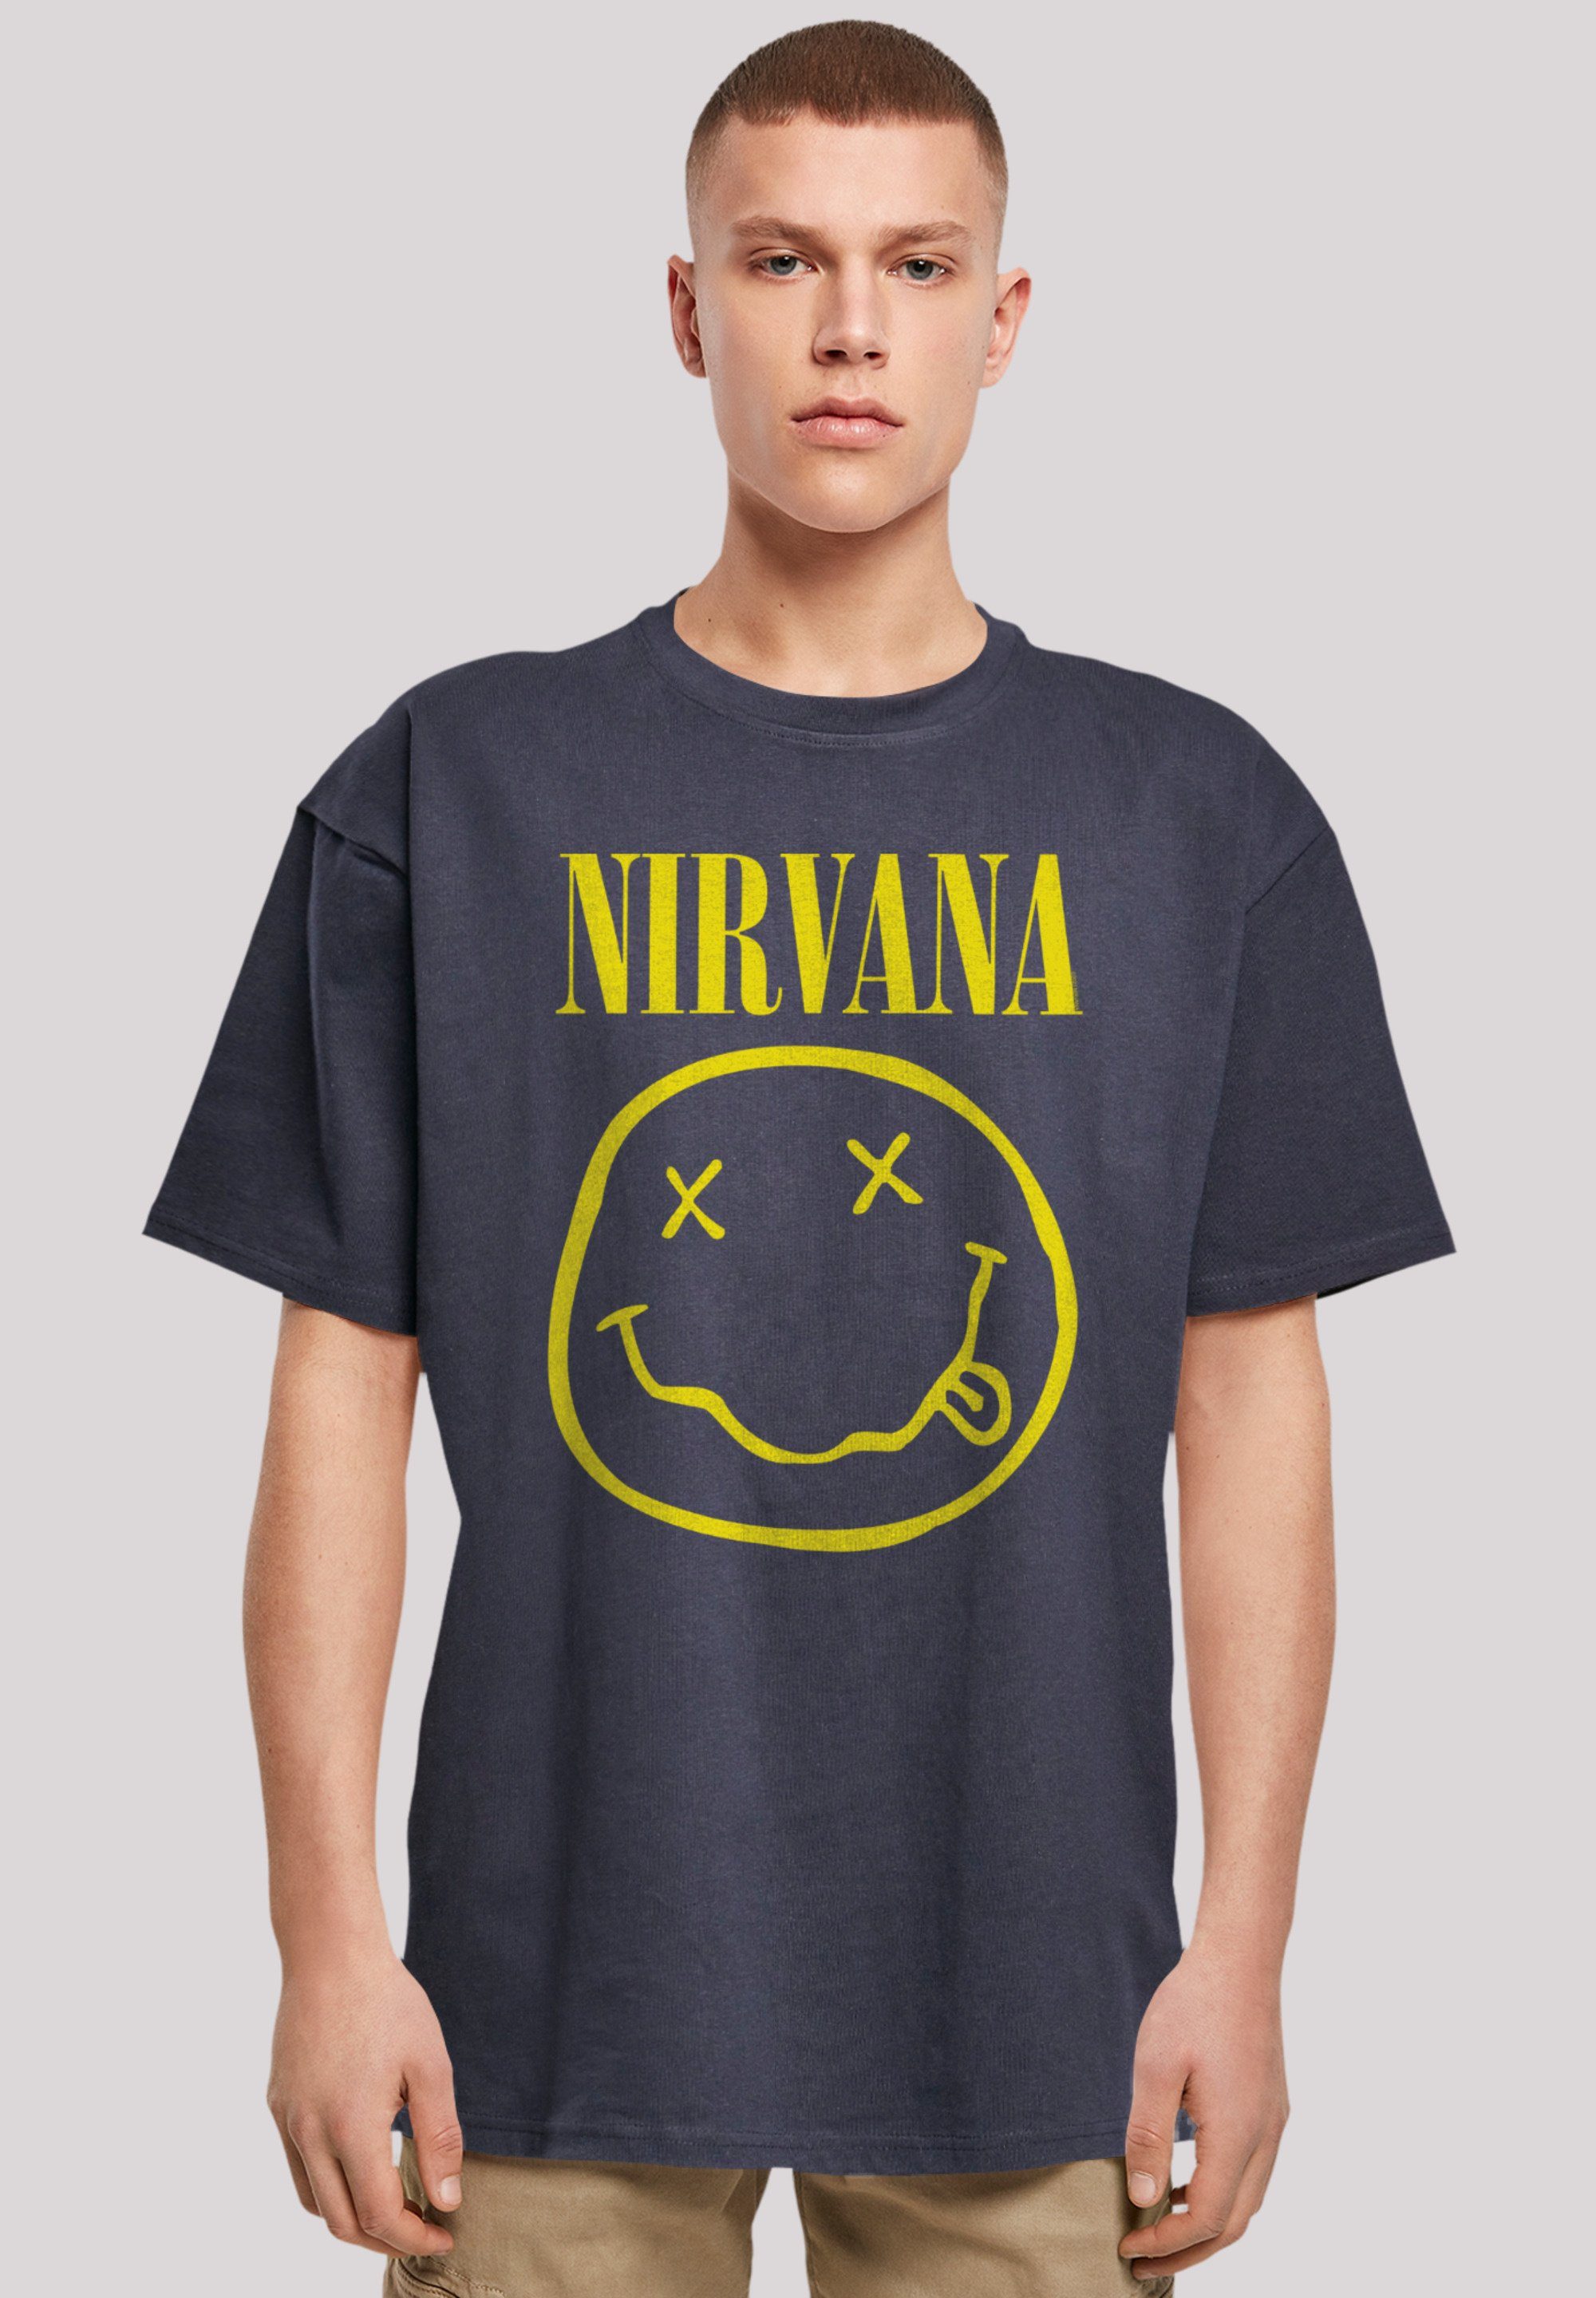 F4NT4STIC T-Shirt Nirvana Qualität, Premium überschnittene Rock Passform Yellow Schultern Band Face und Weite Happy